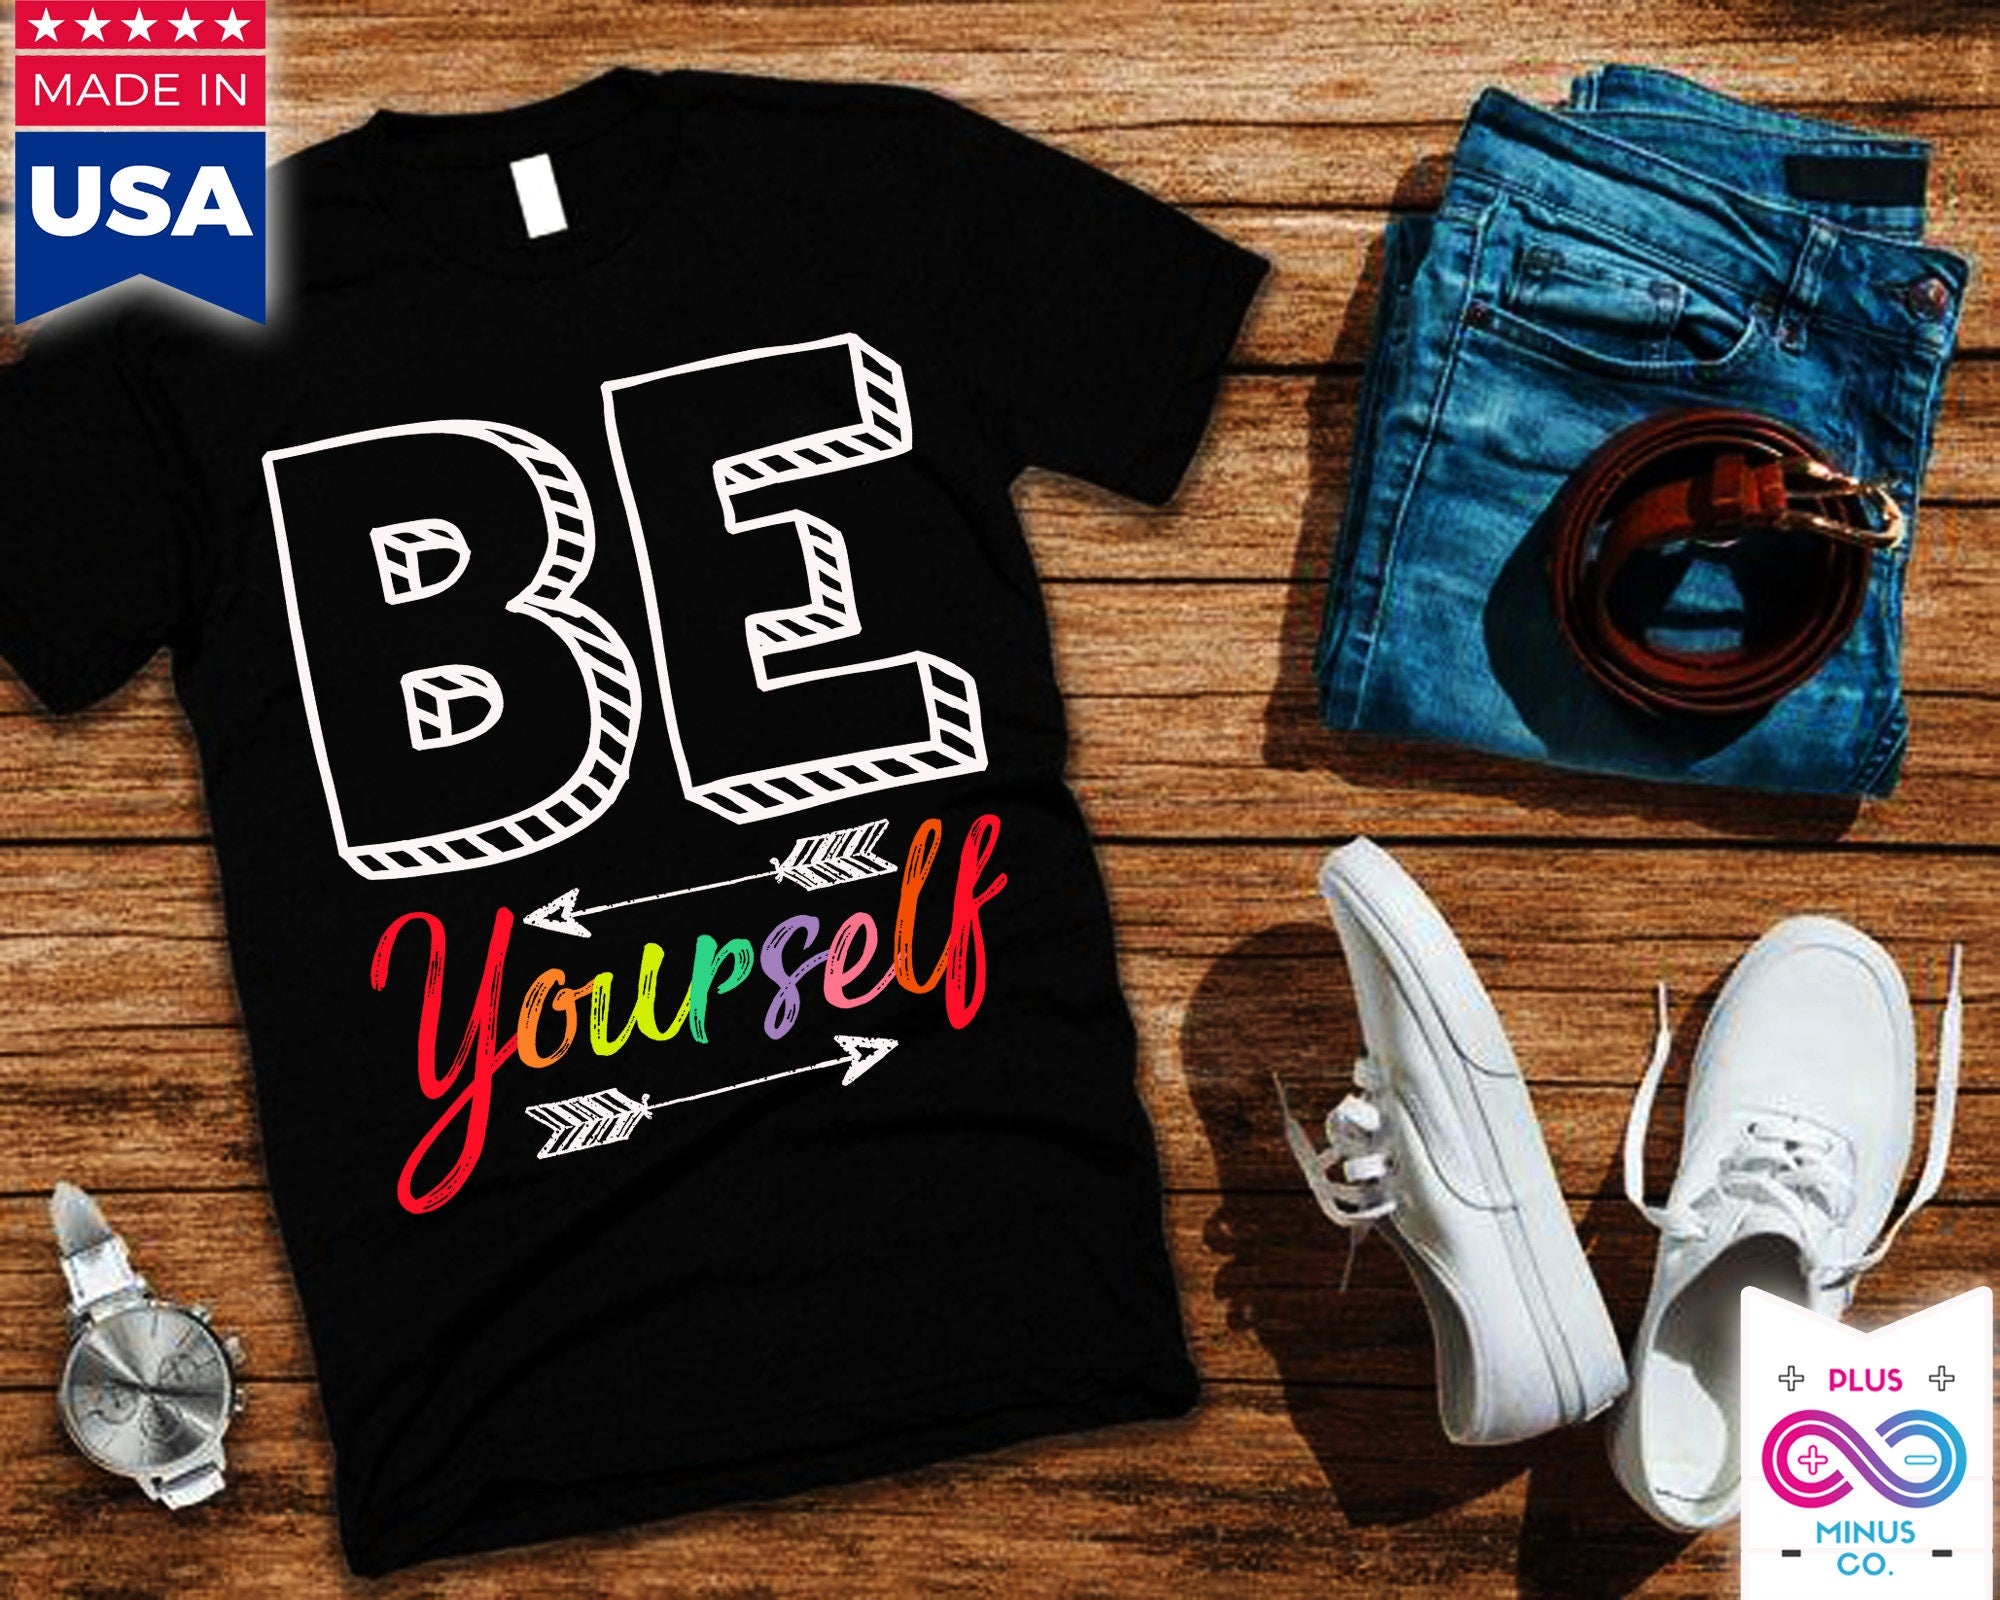 Be Yourself 티셔츠, Be Yourself 유니섹스 크루넥 티셔츠, 트렌디한 티셔츠, Be You 셔츠, 동기 부여 셔츠, 영감을 주는 셔츠, 선물 - plusminusco.com